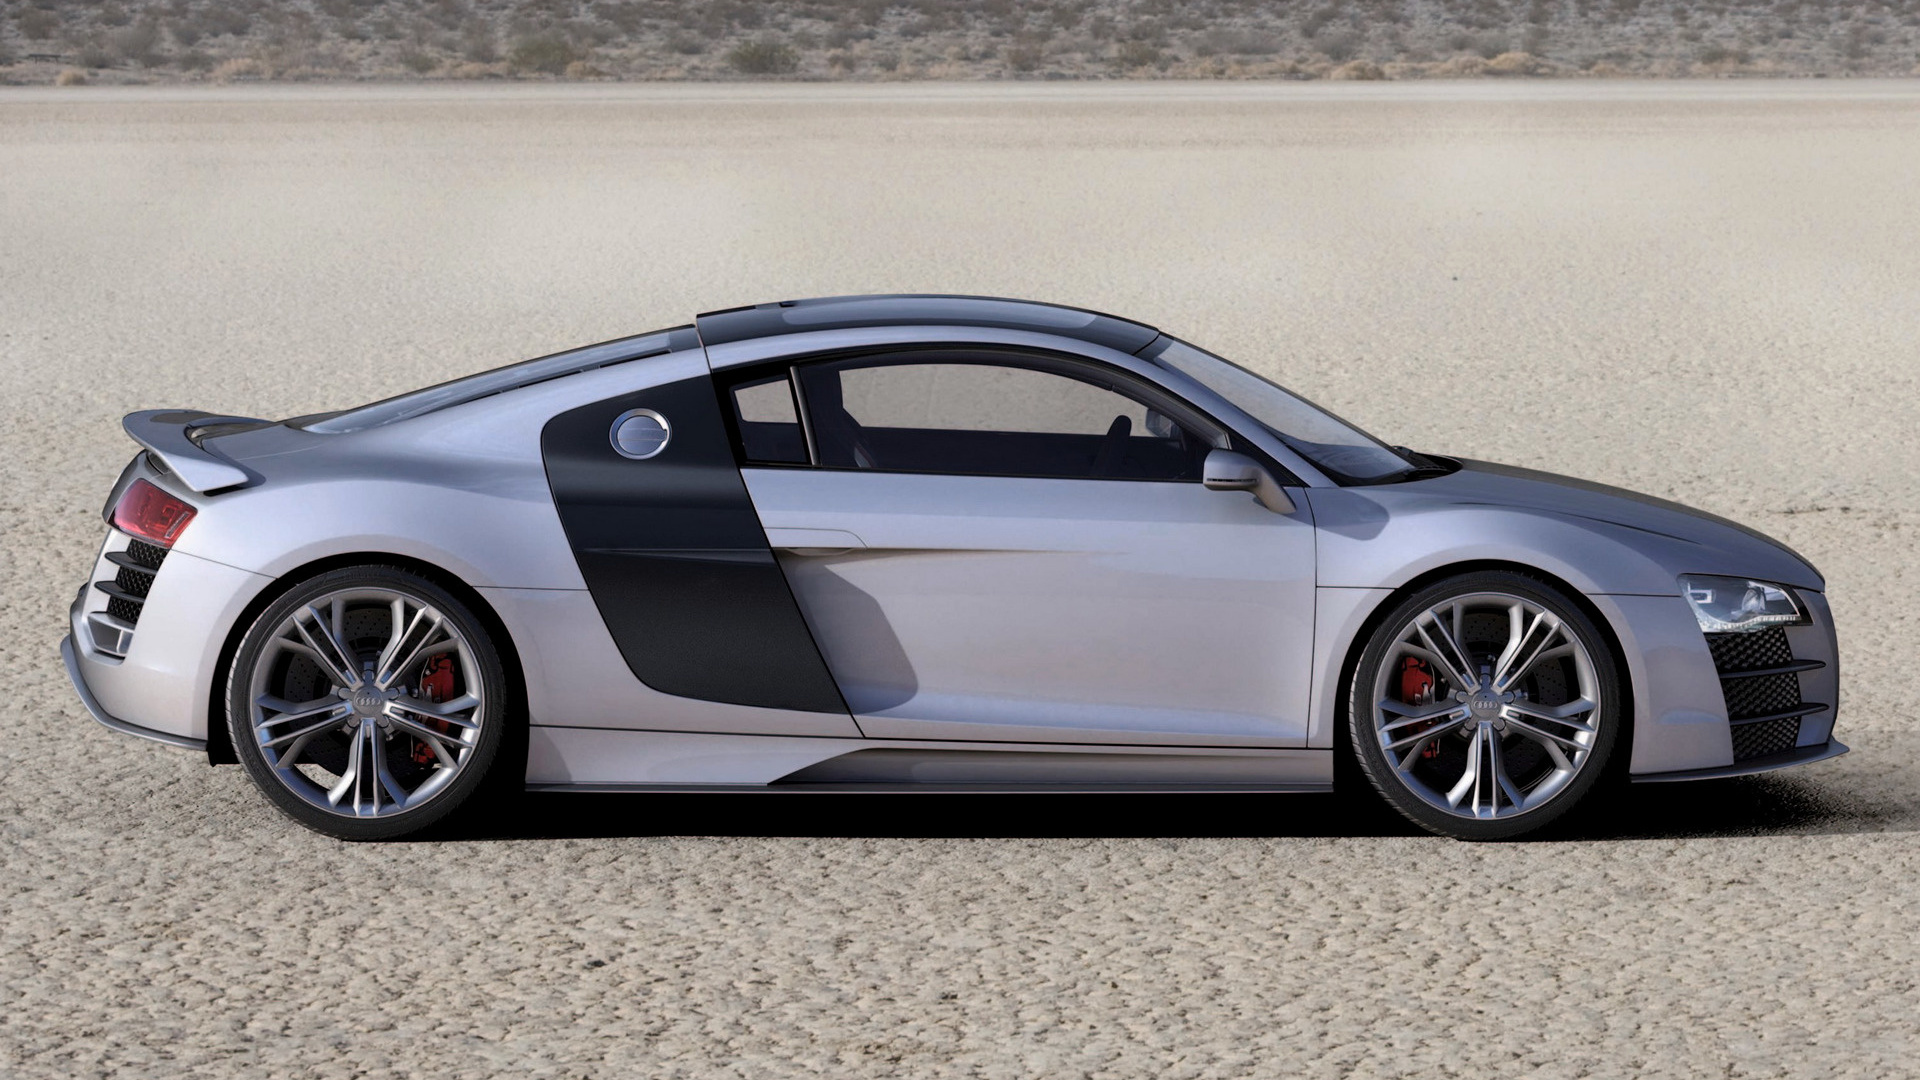 The Future Of Luxury: 2008 Audi R8 V12 TDI Concept